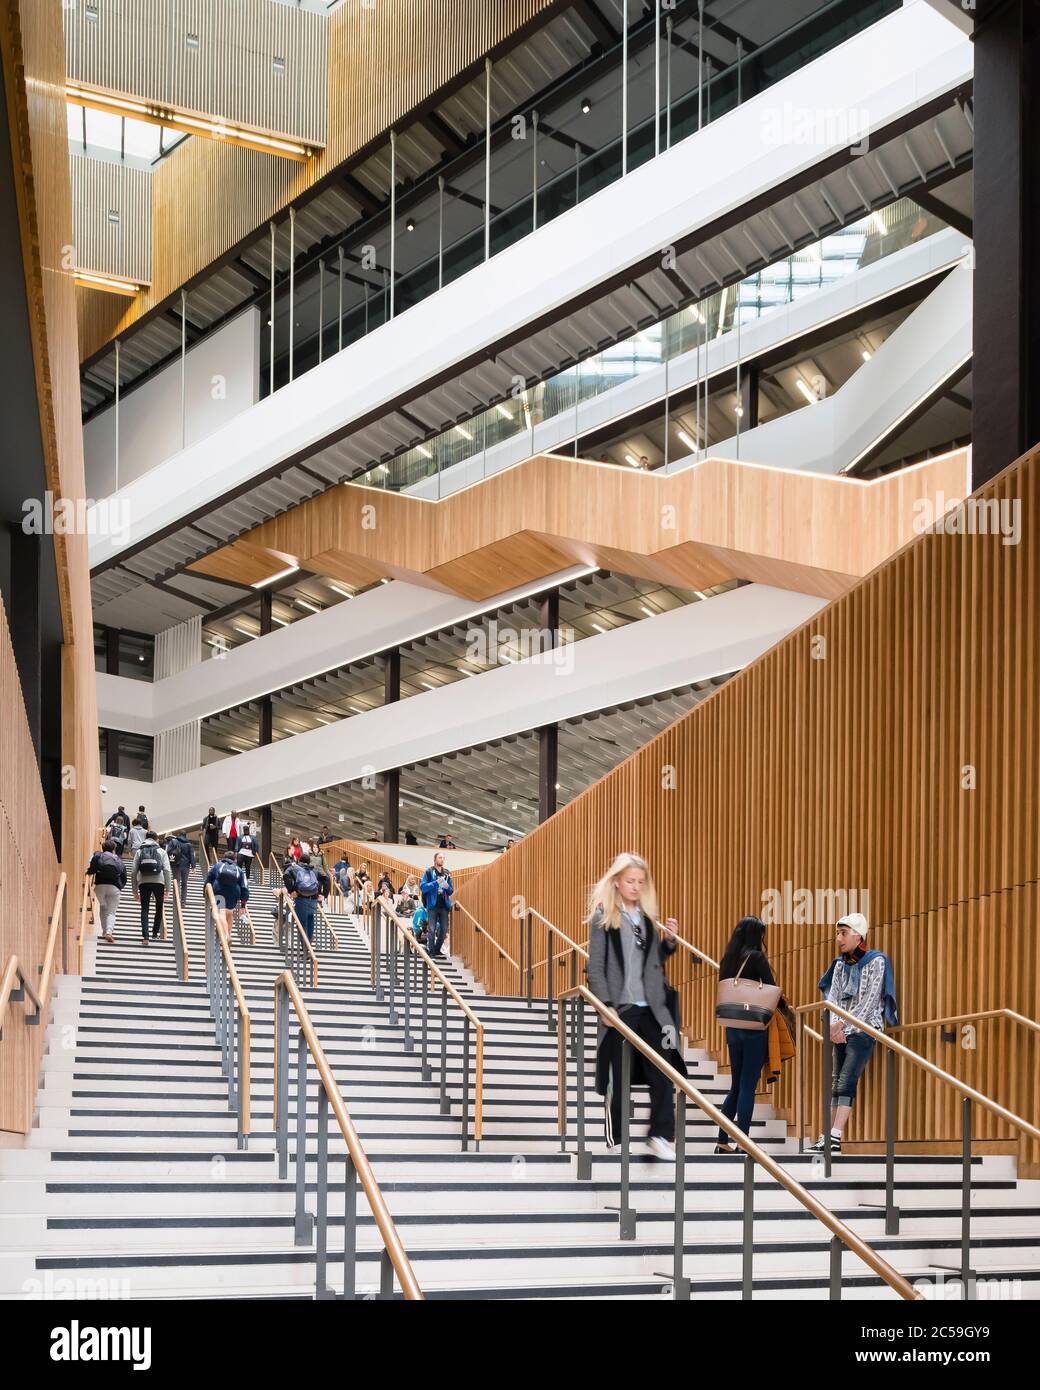 Vue intérieure de l'atrium principal. City of Glasgow College City Campus, Glasgow, Royaume-Uni. Architecte: Reiach et Hall Architects, 2015. Banque D'Images